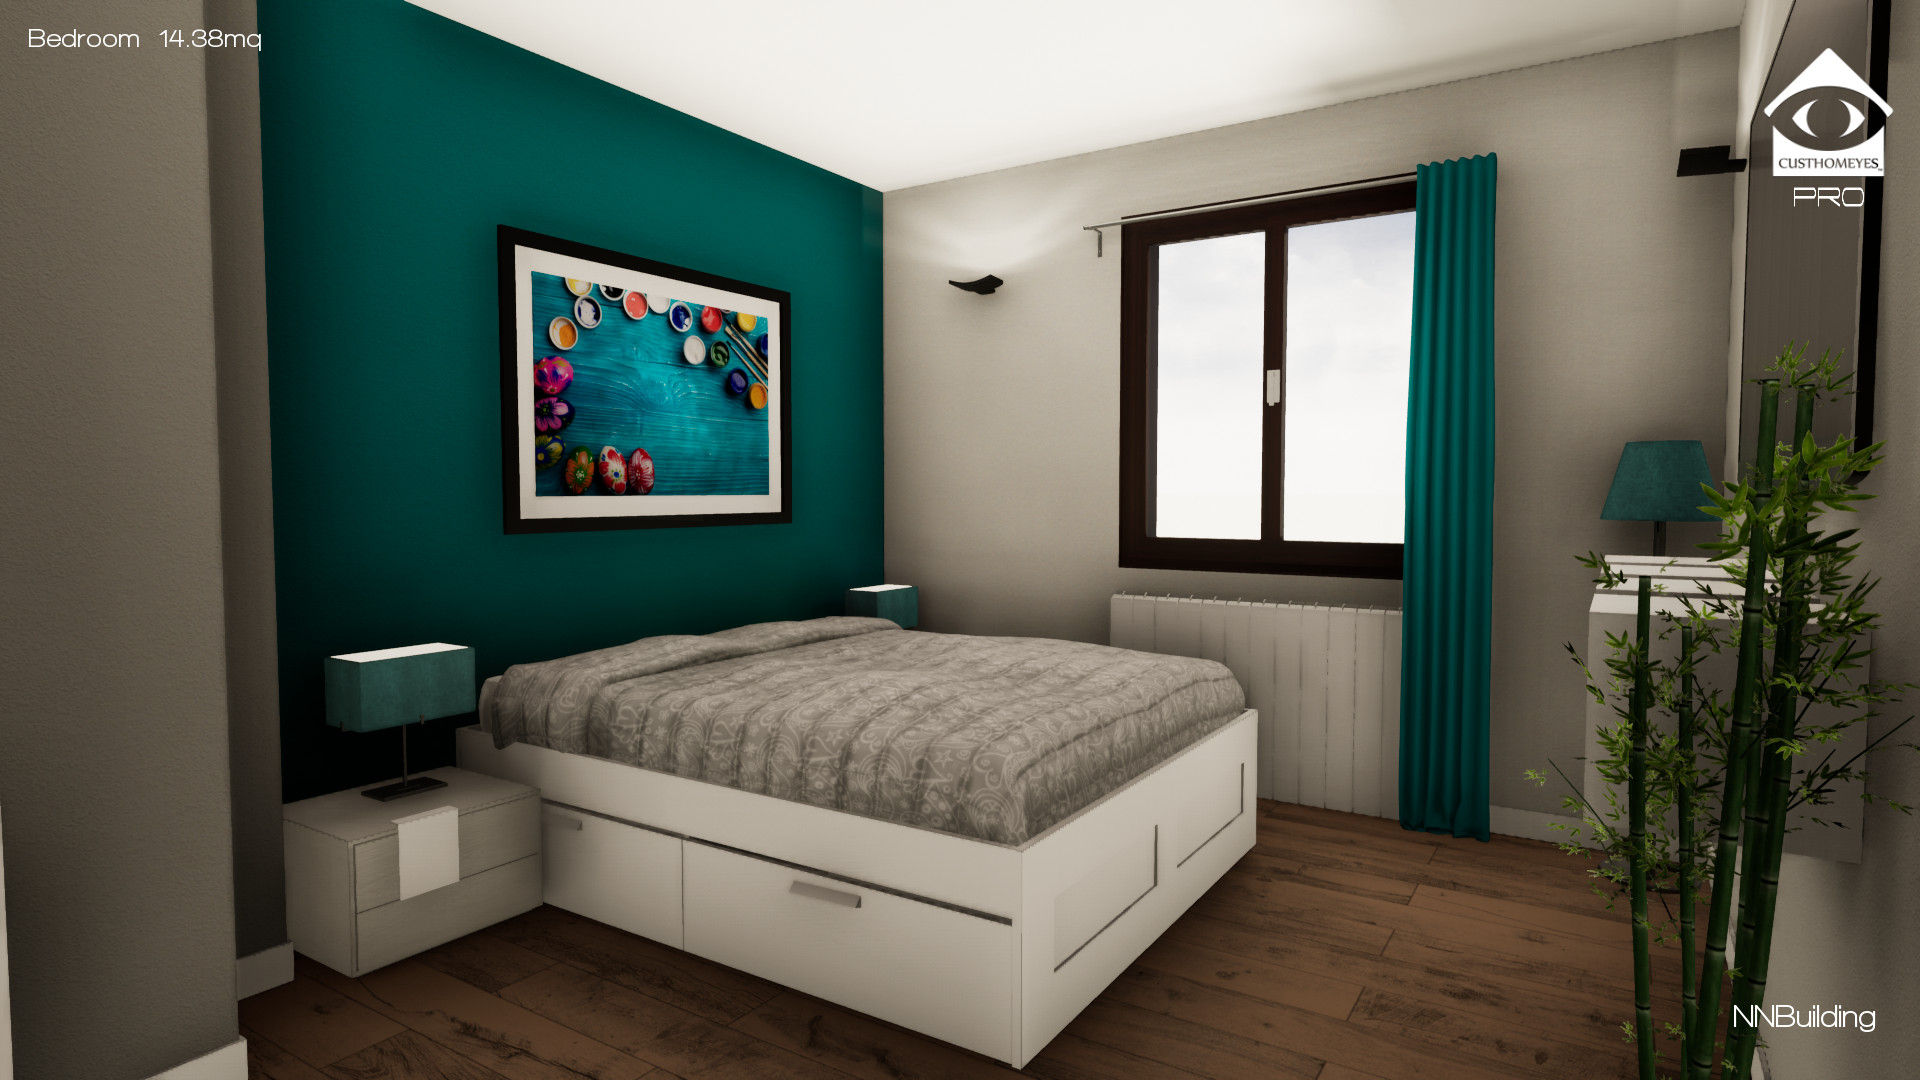 Progettazione in realtà virtuale e ristrutturazione completa - Appartamento Torino, NNBuilding NNBuilding Classic style bedroom